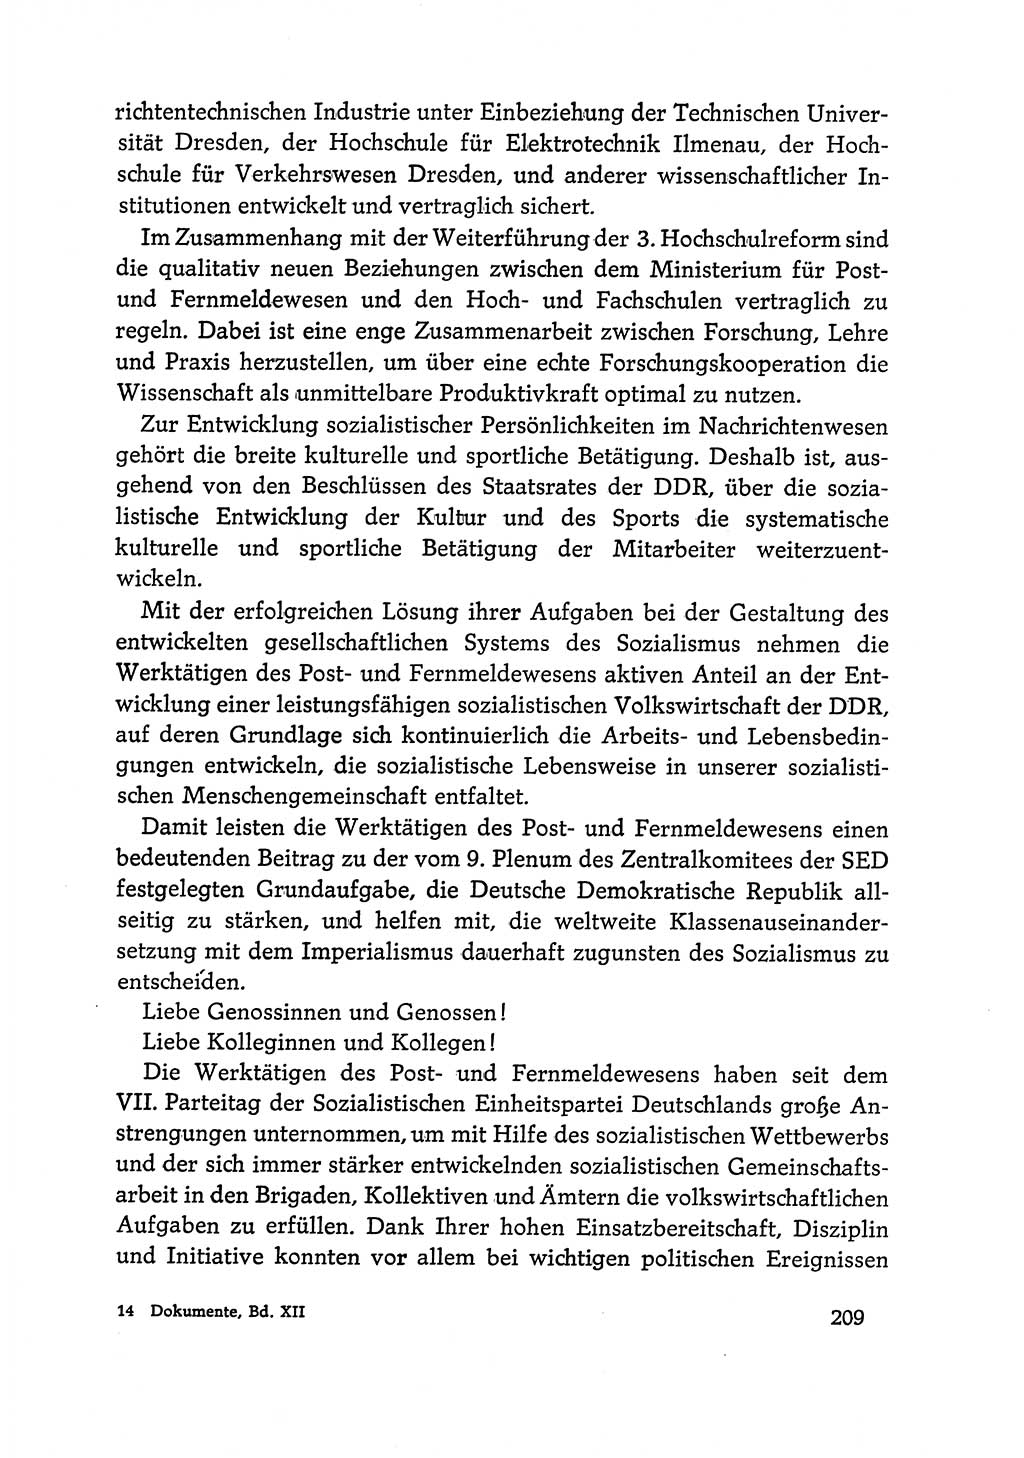 Dokumente der Sozialistischen Einheitspartei Deutschlands (SED) [Deutsche Demokratische Republik (DDR)] 1968-1969, Seite 209 (Dok. SED DDR 1968-1969, S. 209)